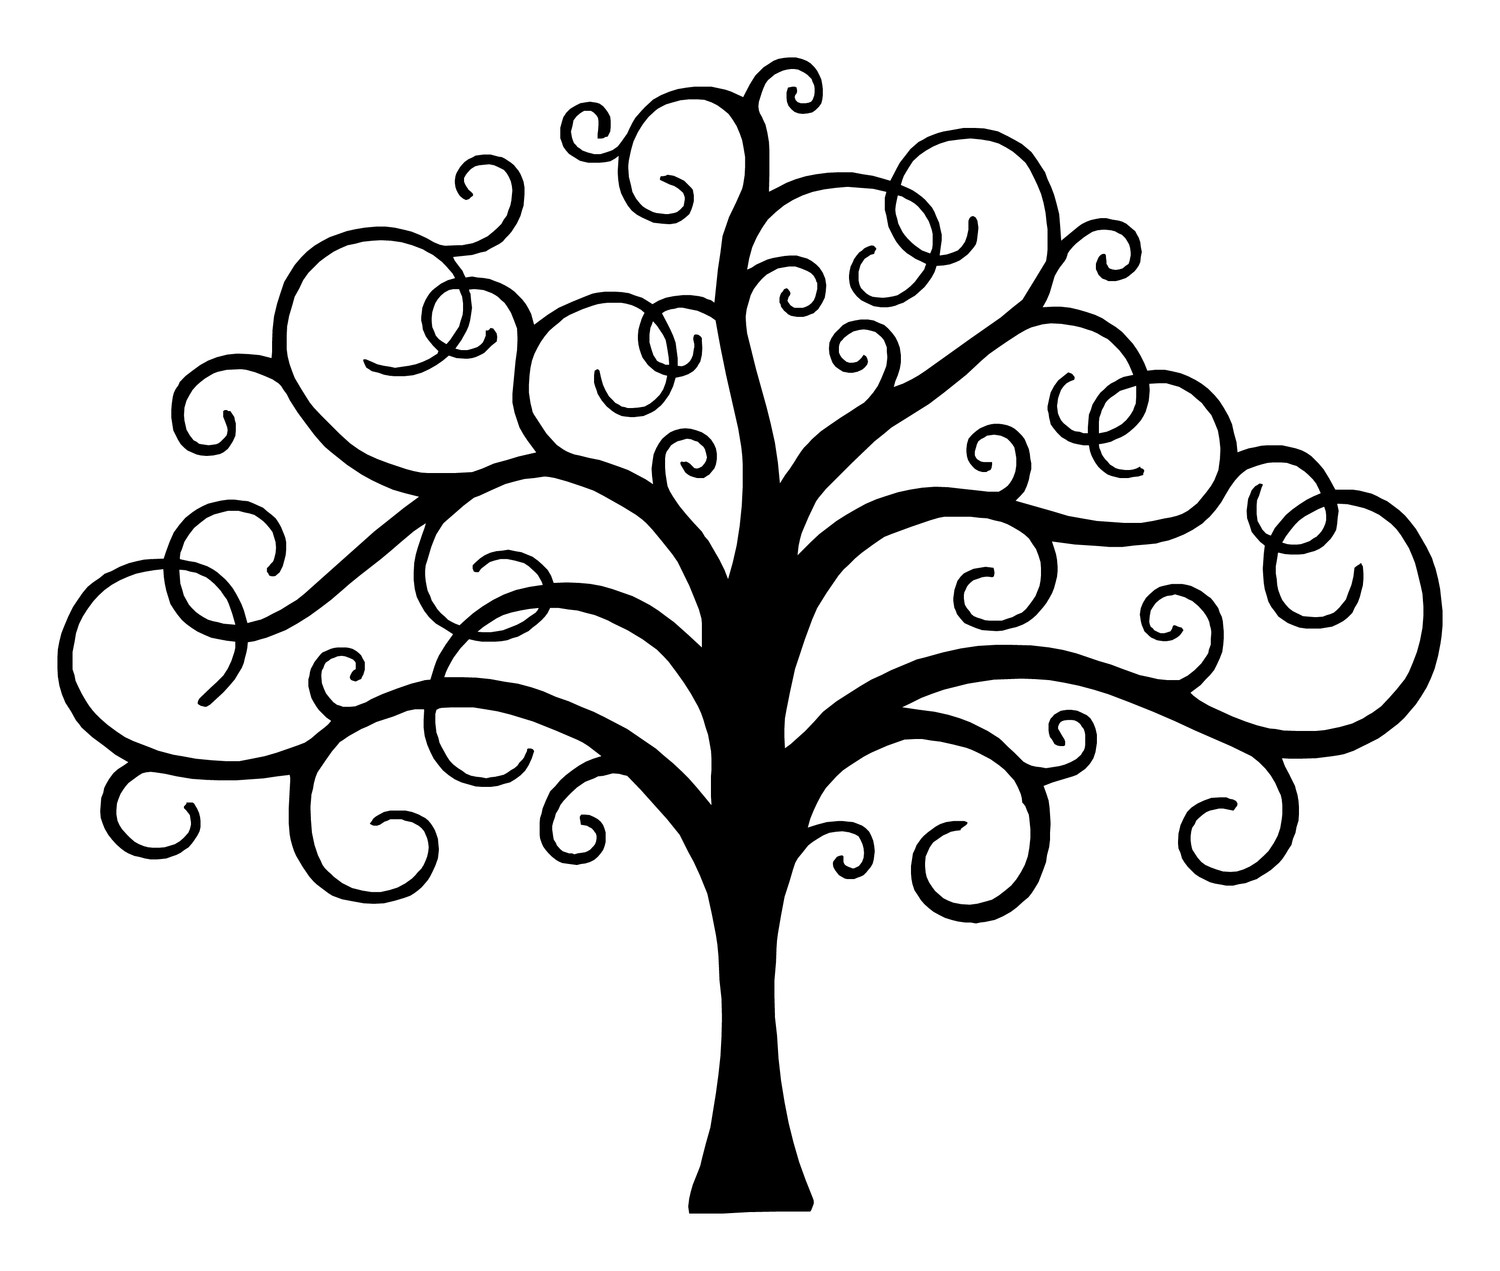 ... Celtic tree of life clipa